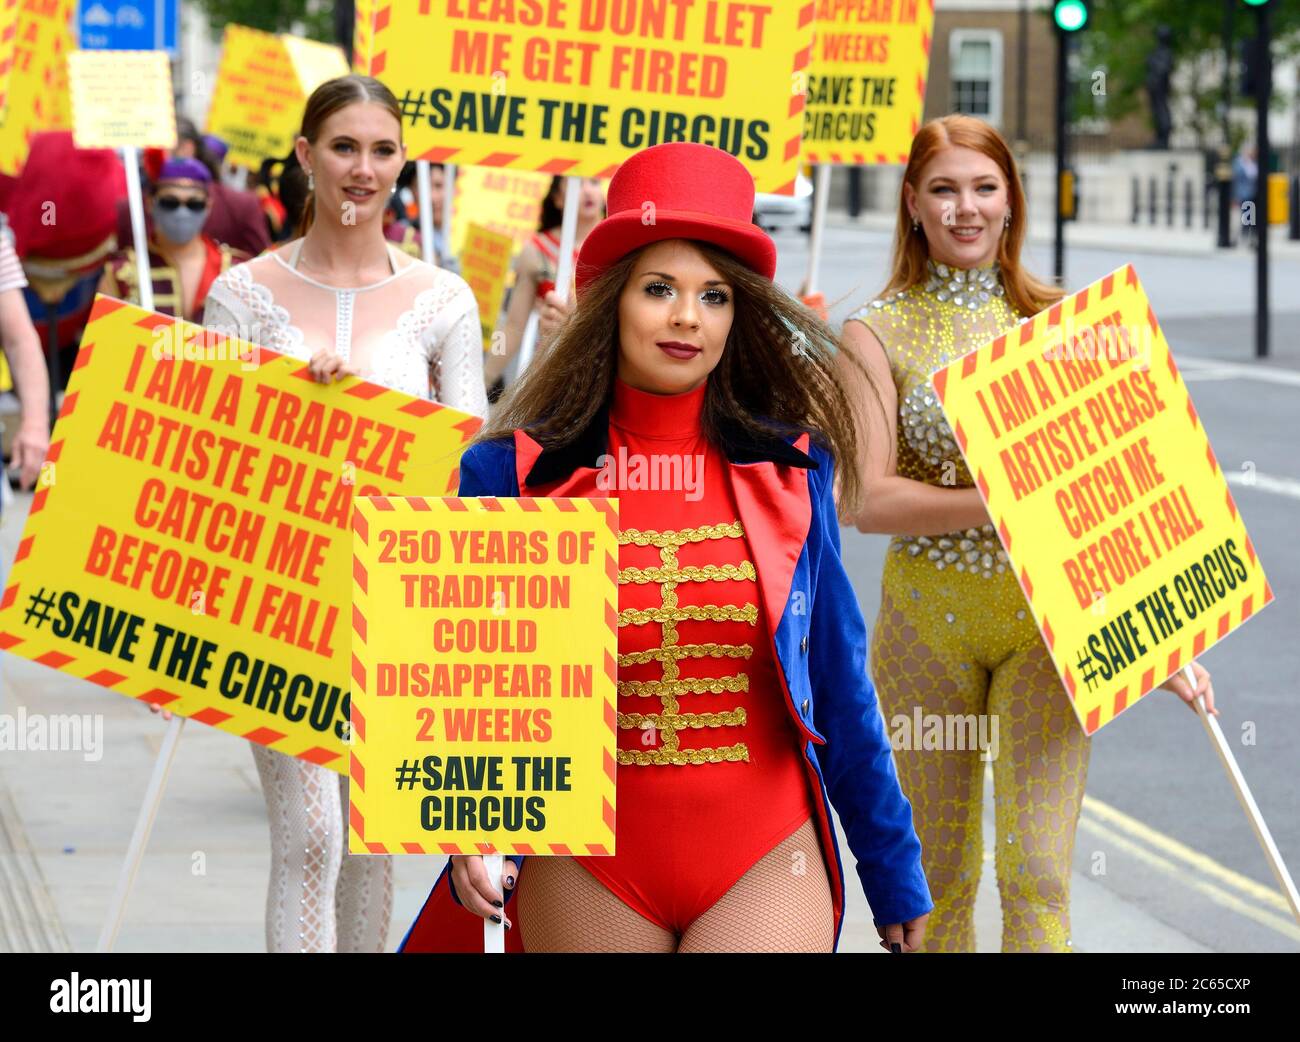 Londres, Royaume-Uni. 7 juillet 2020. Sauver le Circus manifestants tour Westminster pour le lobby pour le financement pendant la crise COVID. Crédit: PjrFoto/Alay Live News Banque D'Images